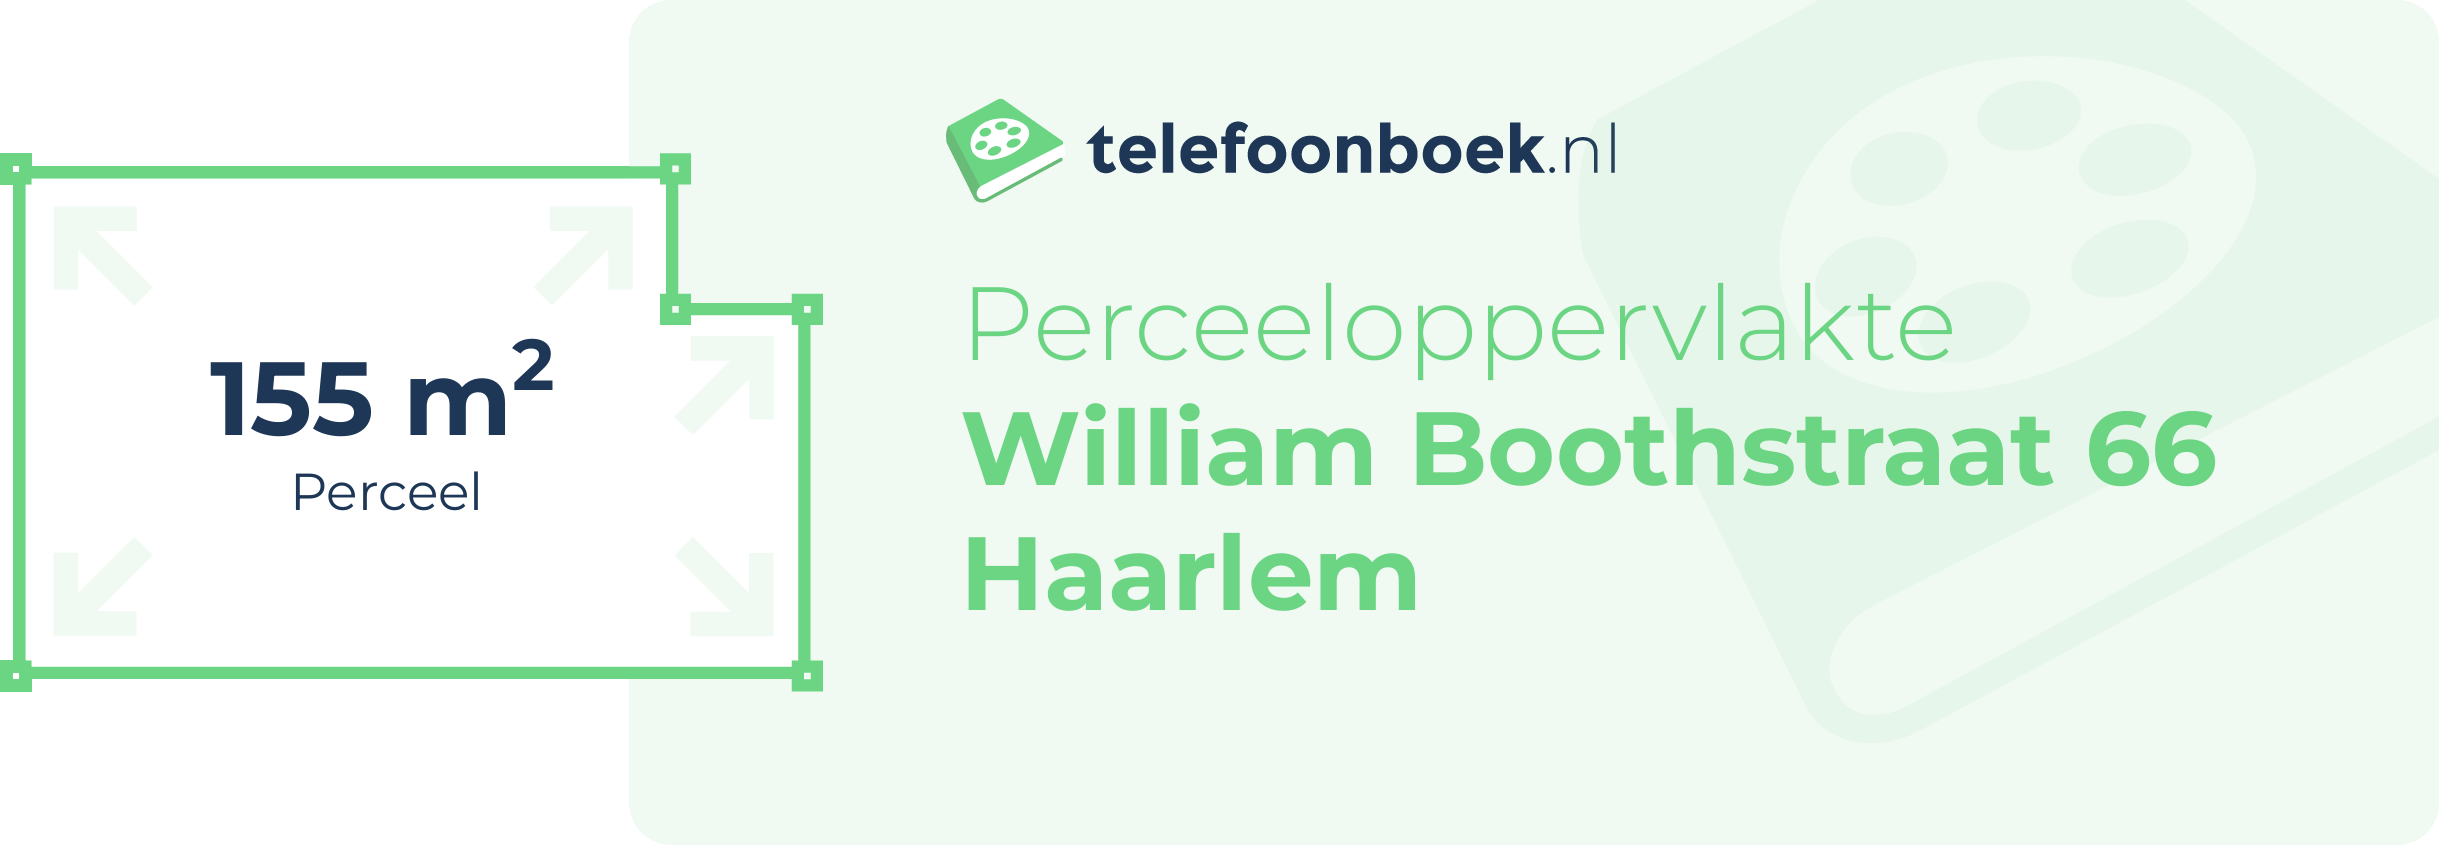 Perceeloppervlakte William Boothstraat 66 Haarlem